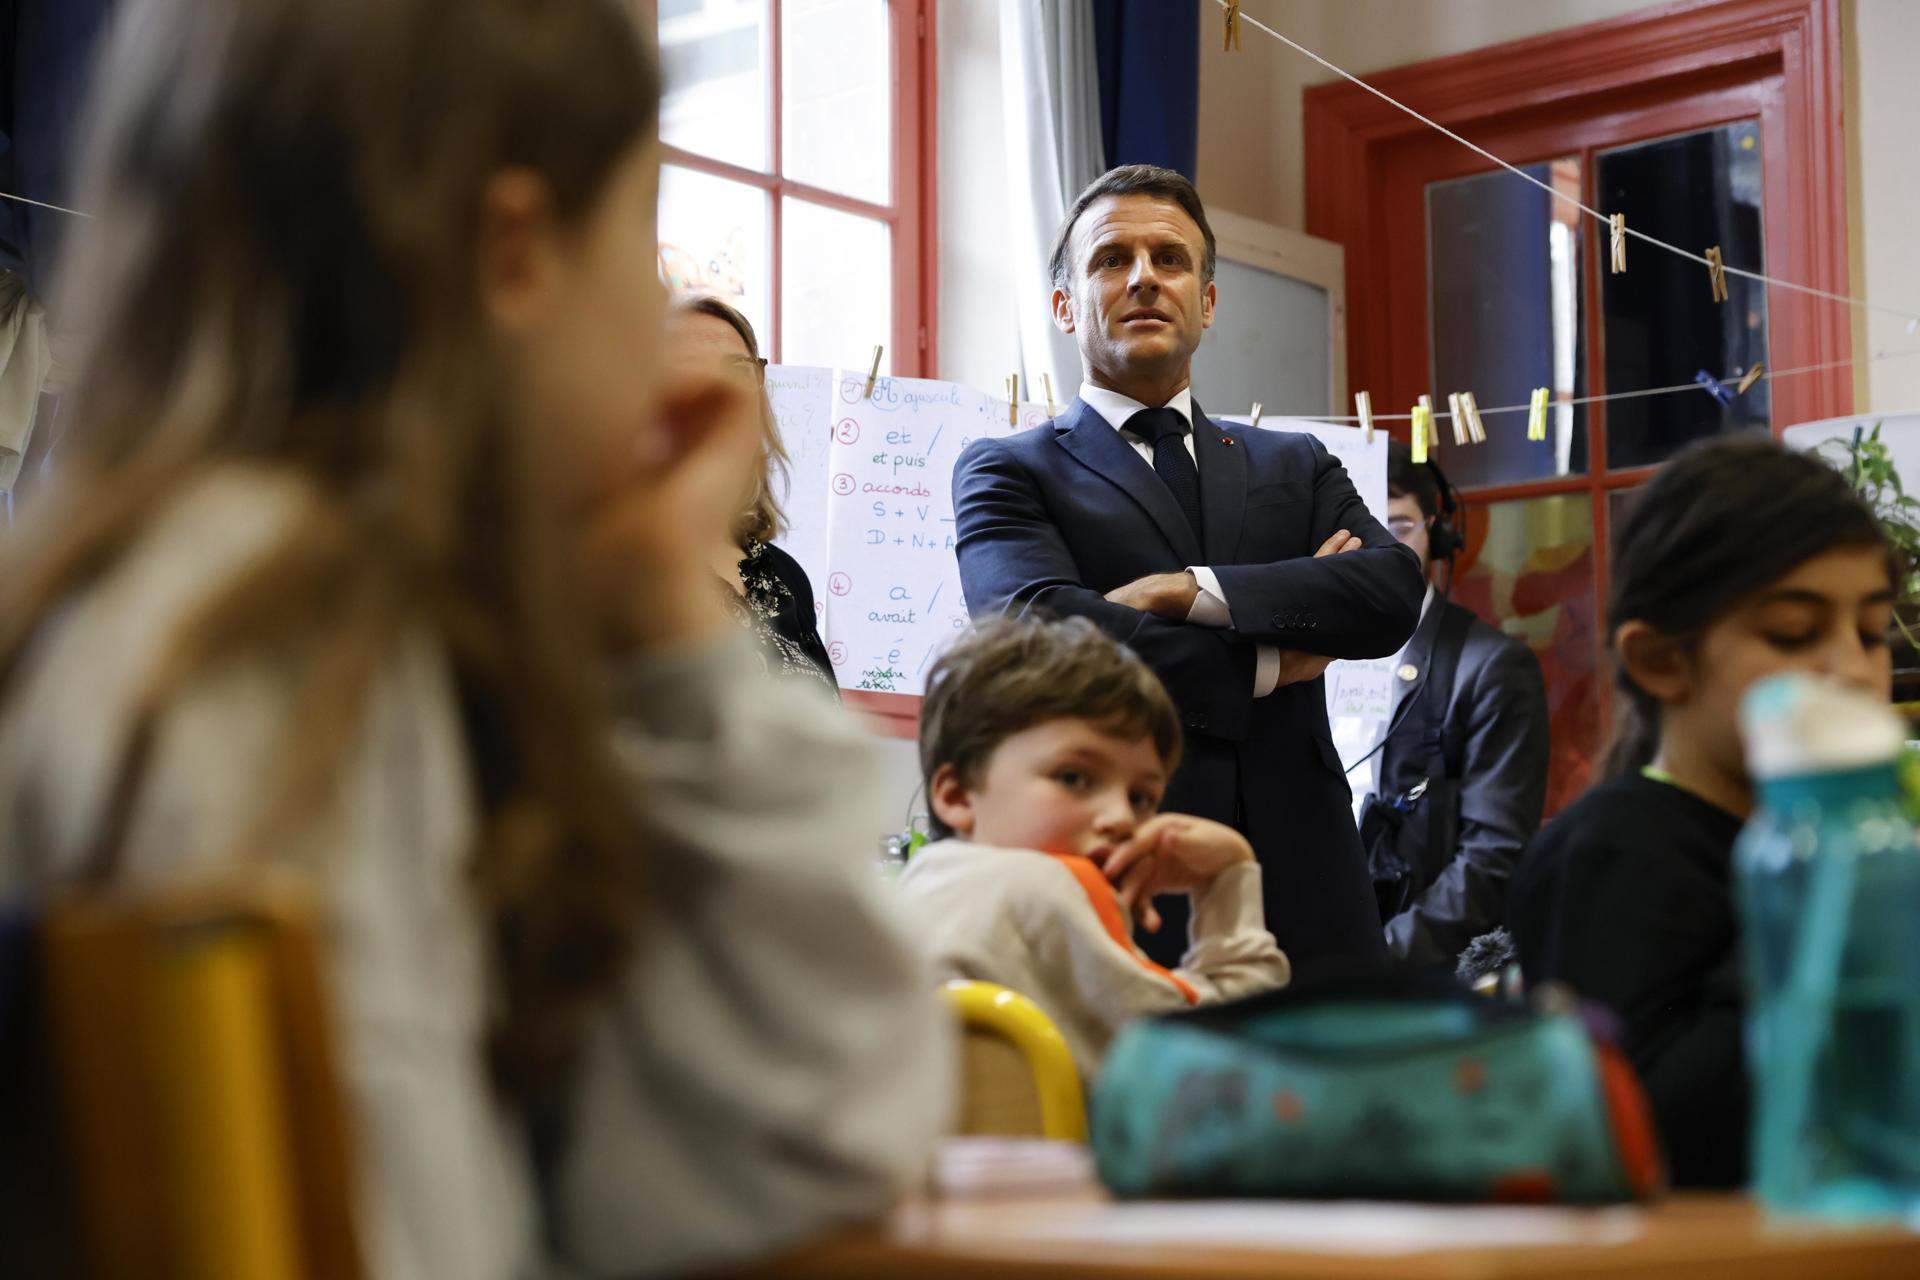 Macron alerta de la "violència desinhibida" a França després de l'atac mortal entre adolescents